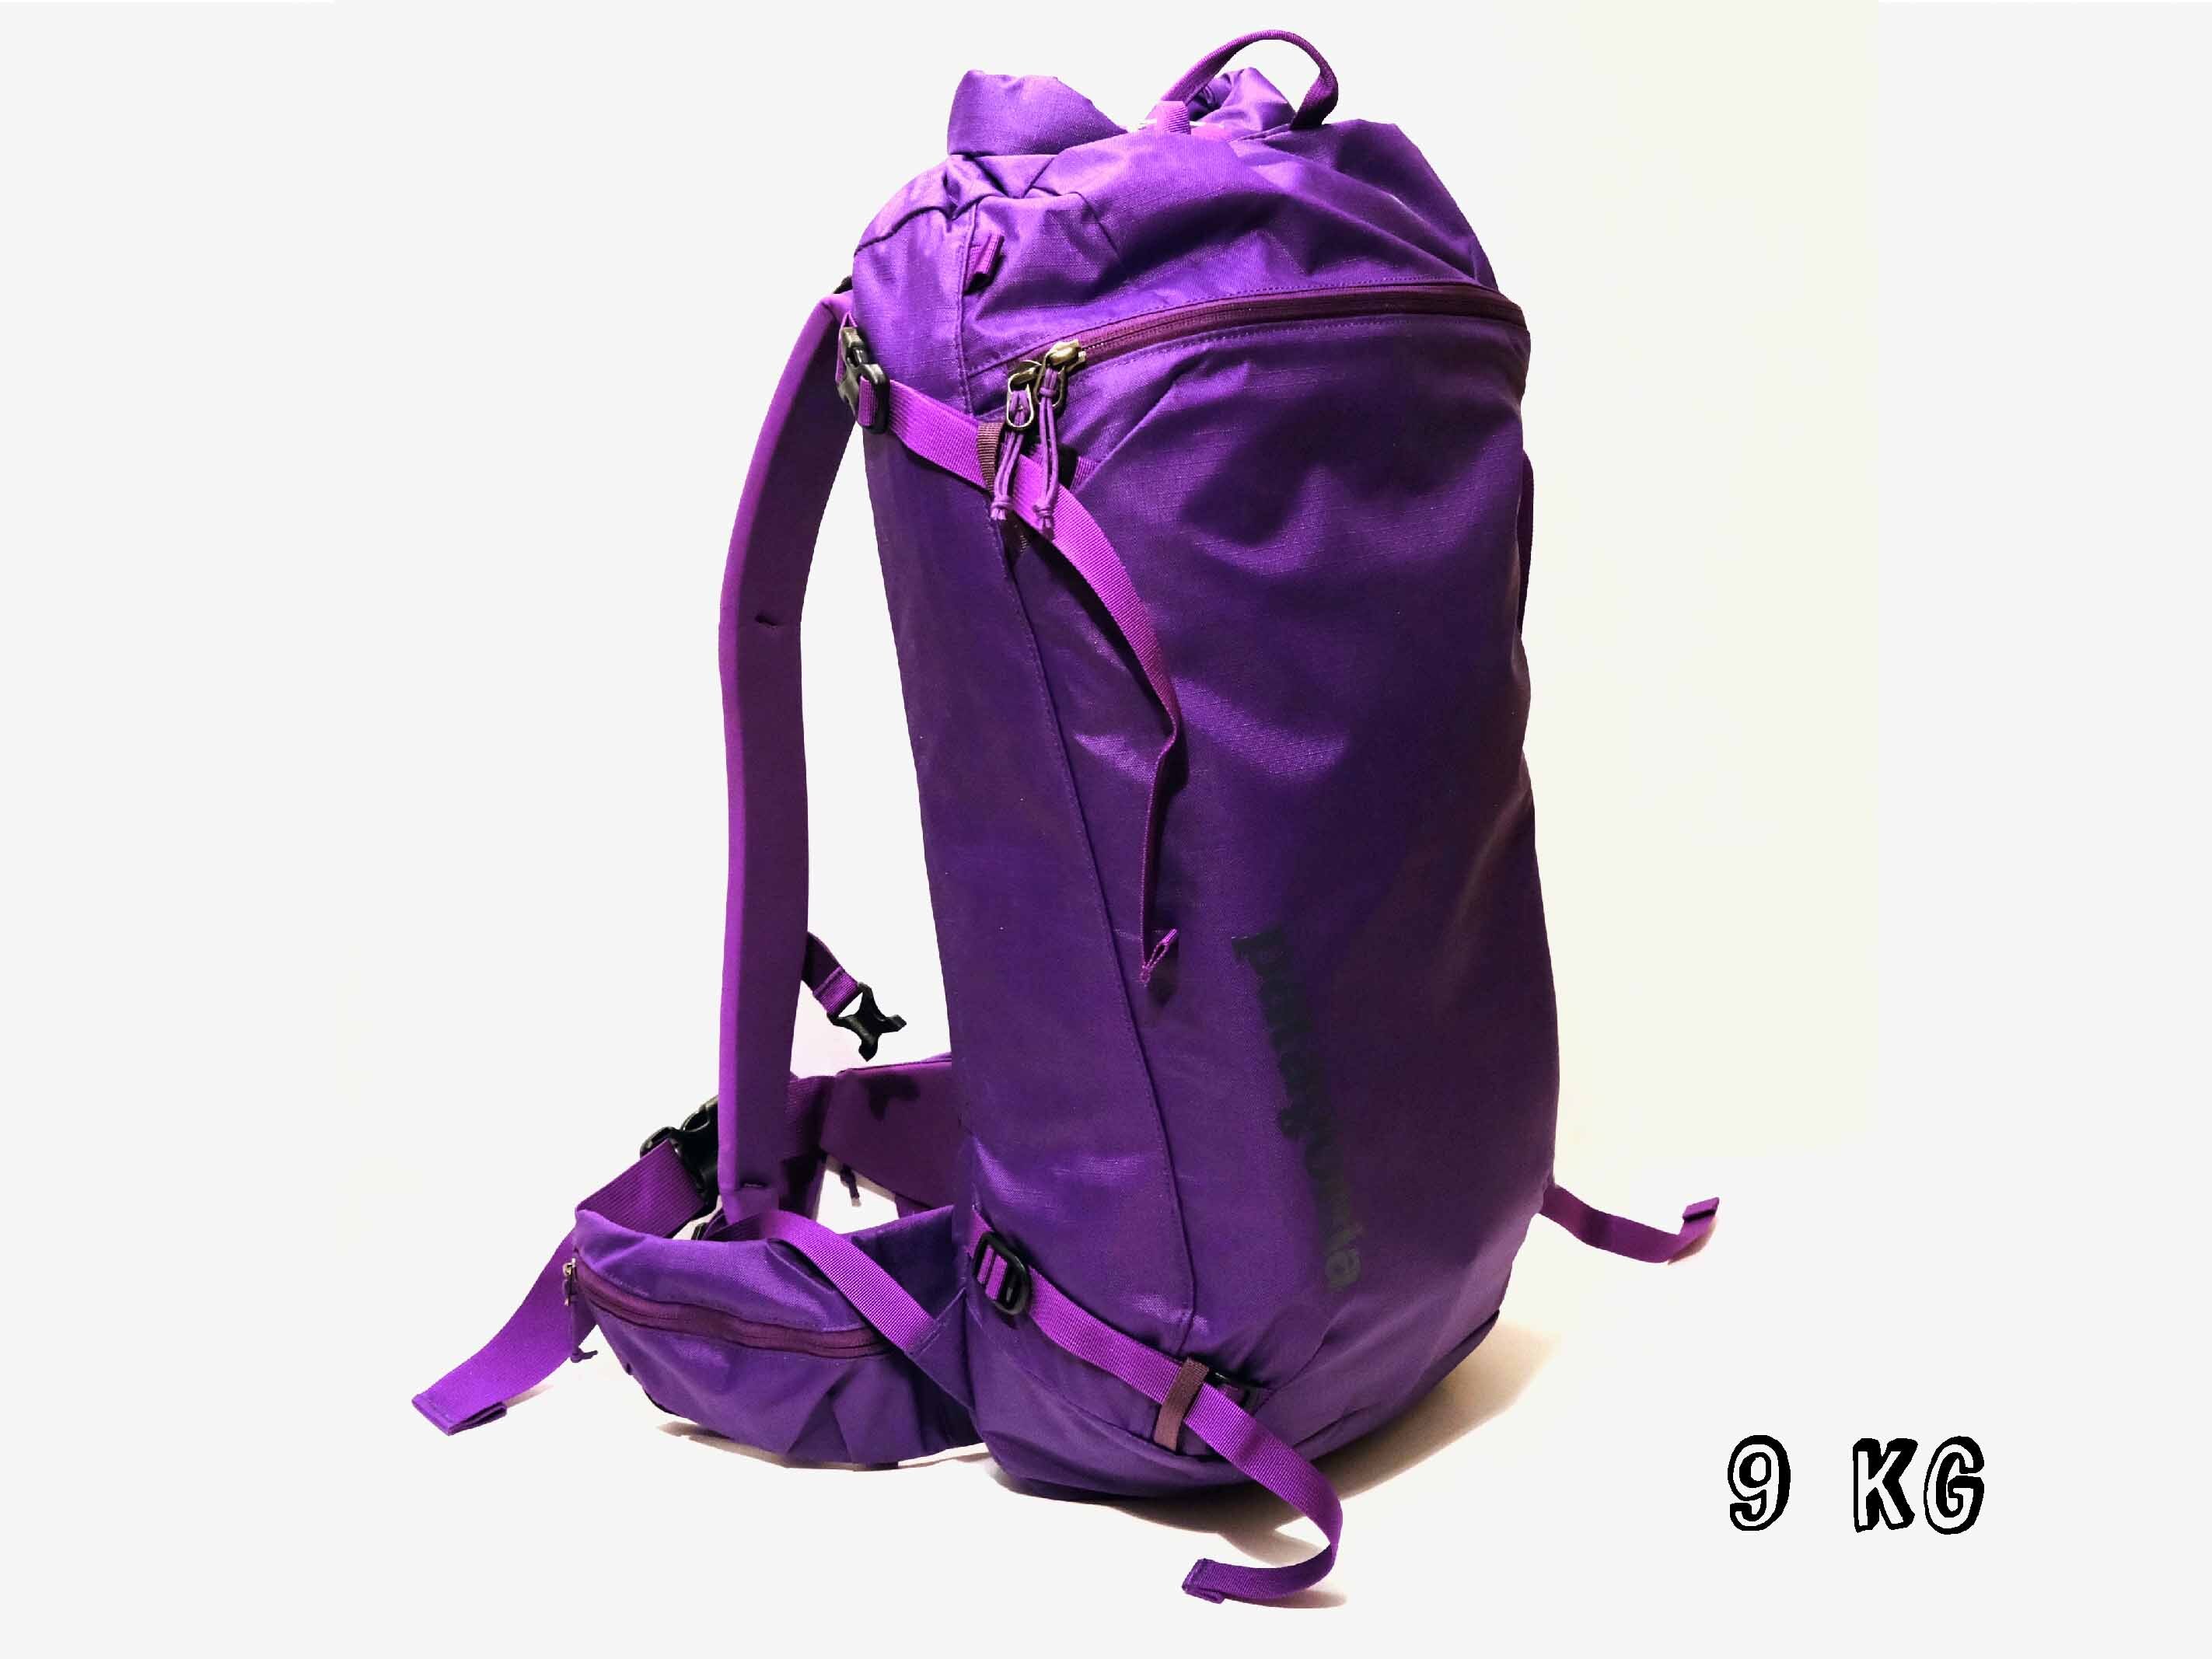 Packliste: Die gesamte Ausrüstung für eine Tages-Skihochtour findet bequem Platz in einem 30 Liter-Rucksack